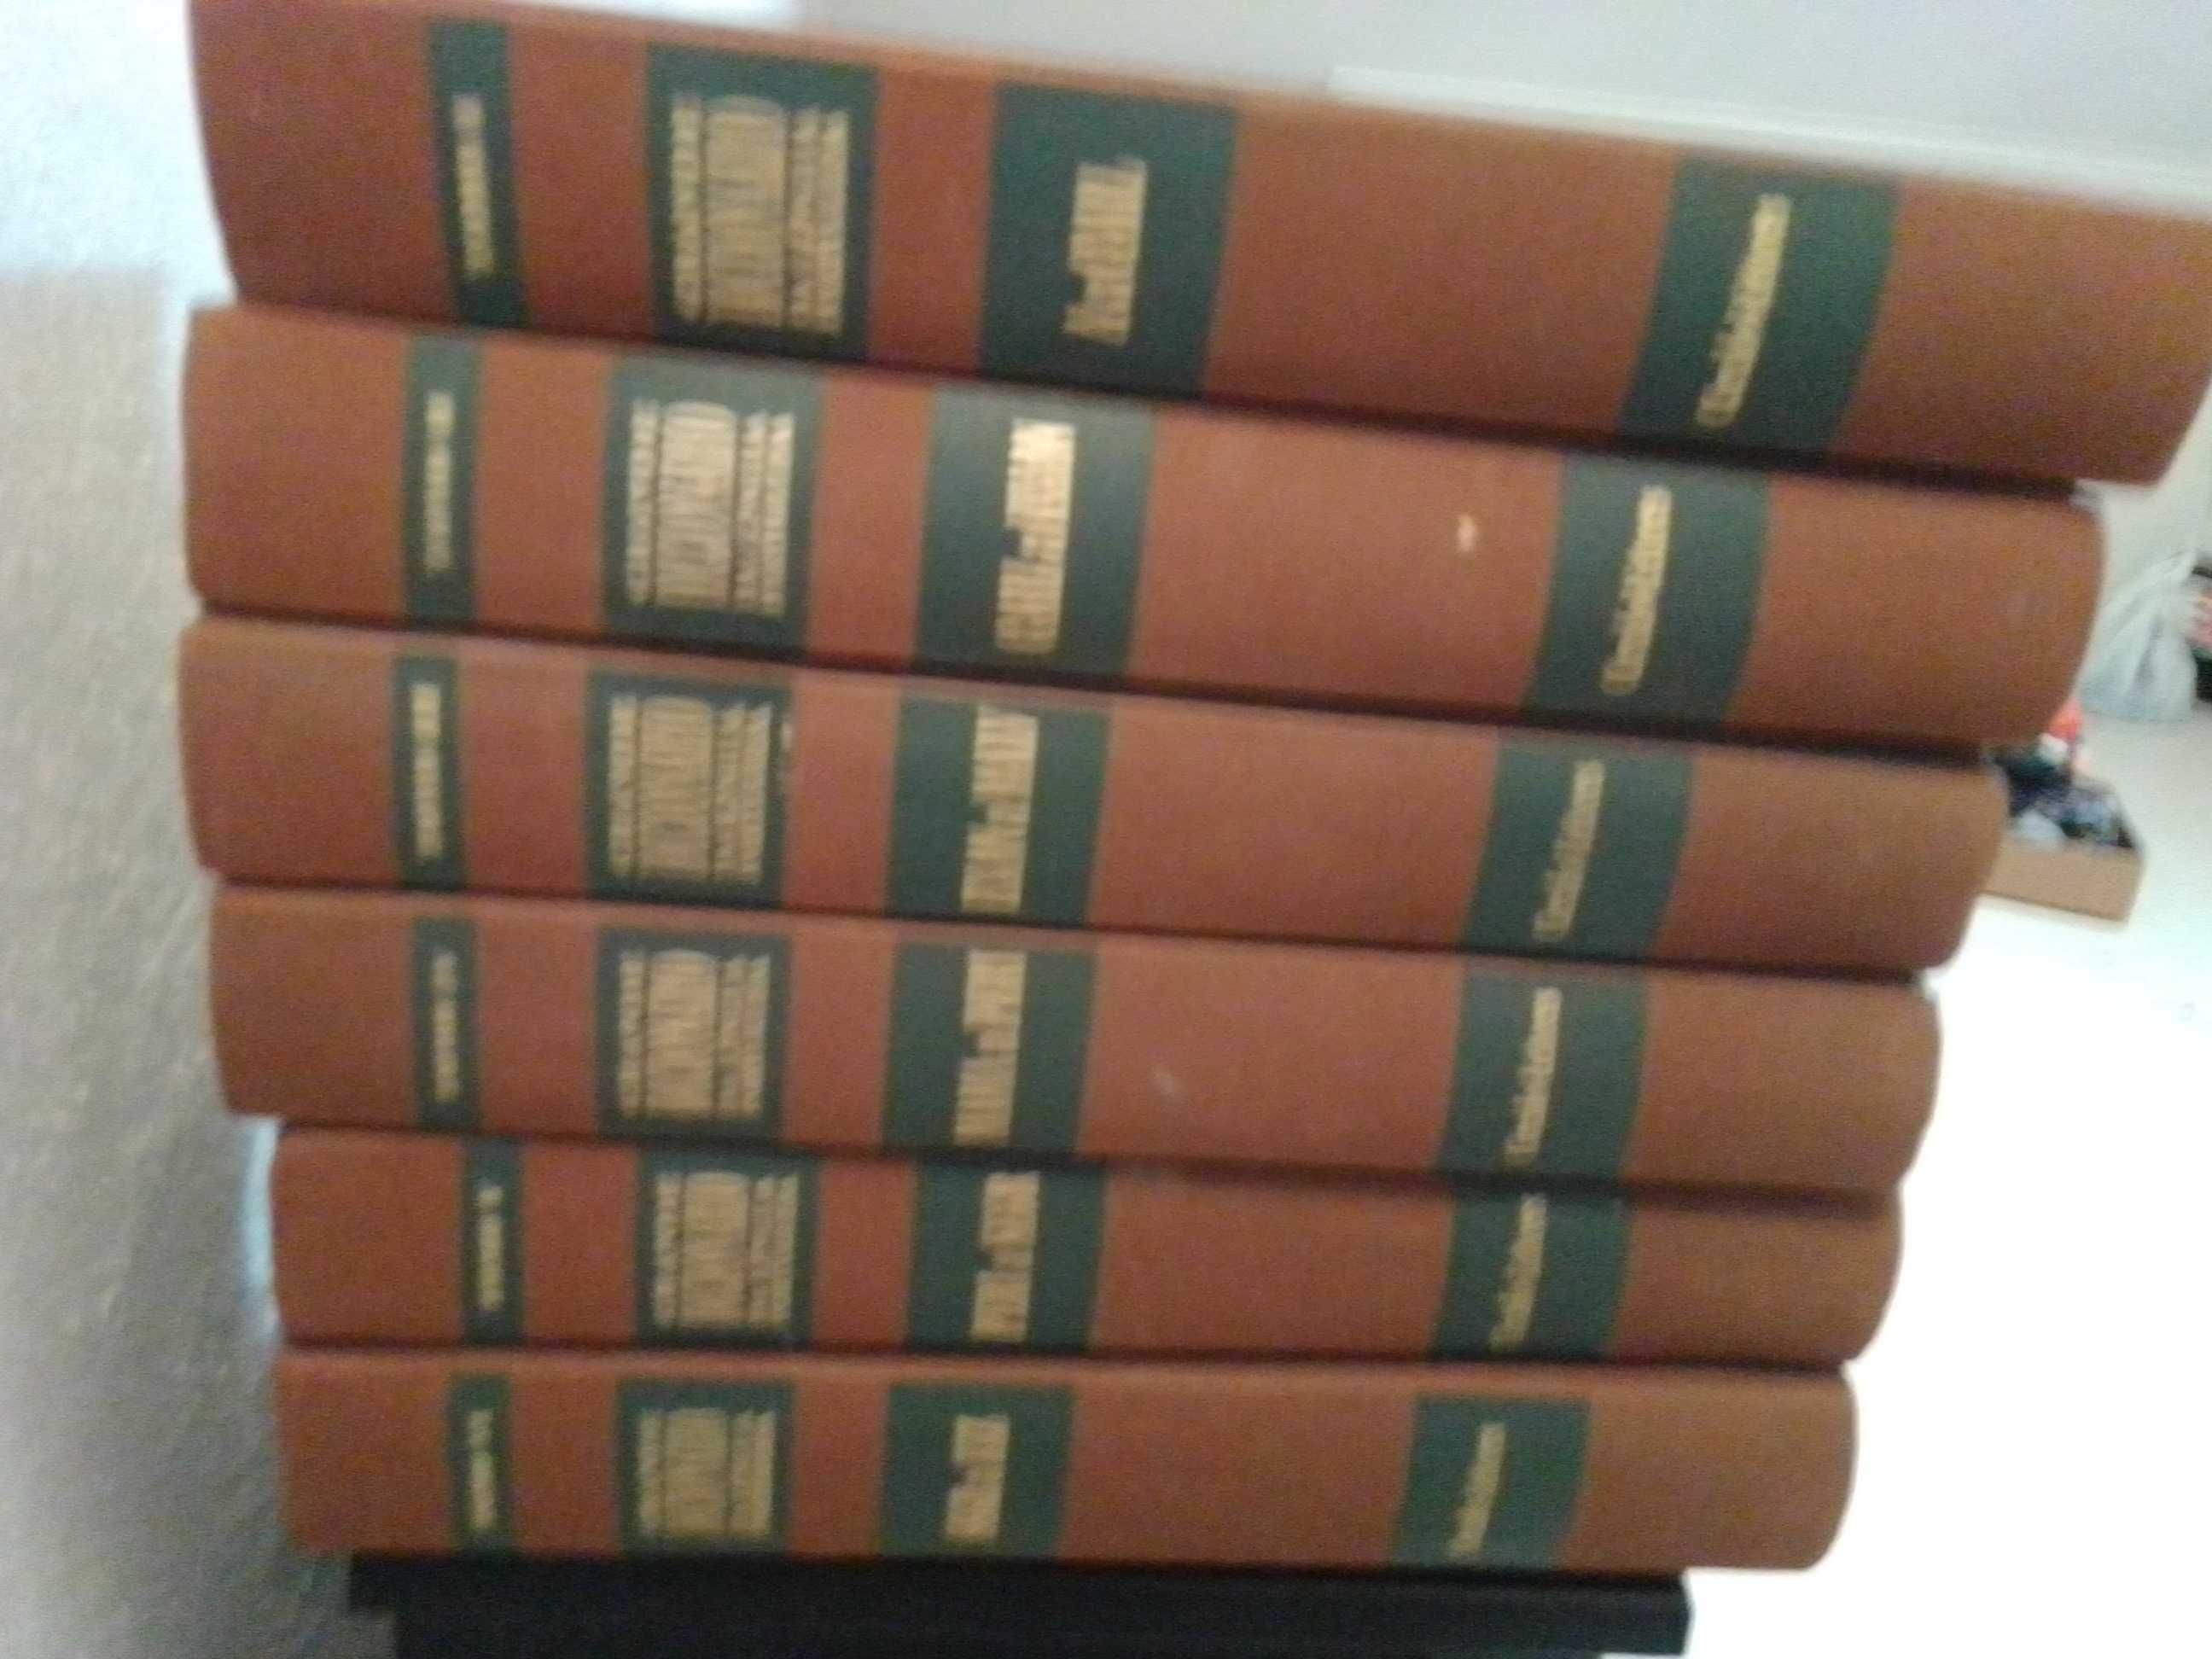 Coleção de dicionários de língua portuguesa Círculo de Leitores